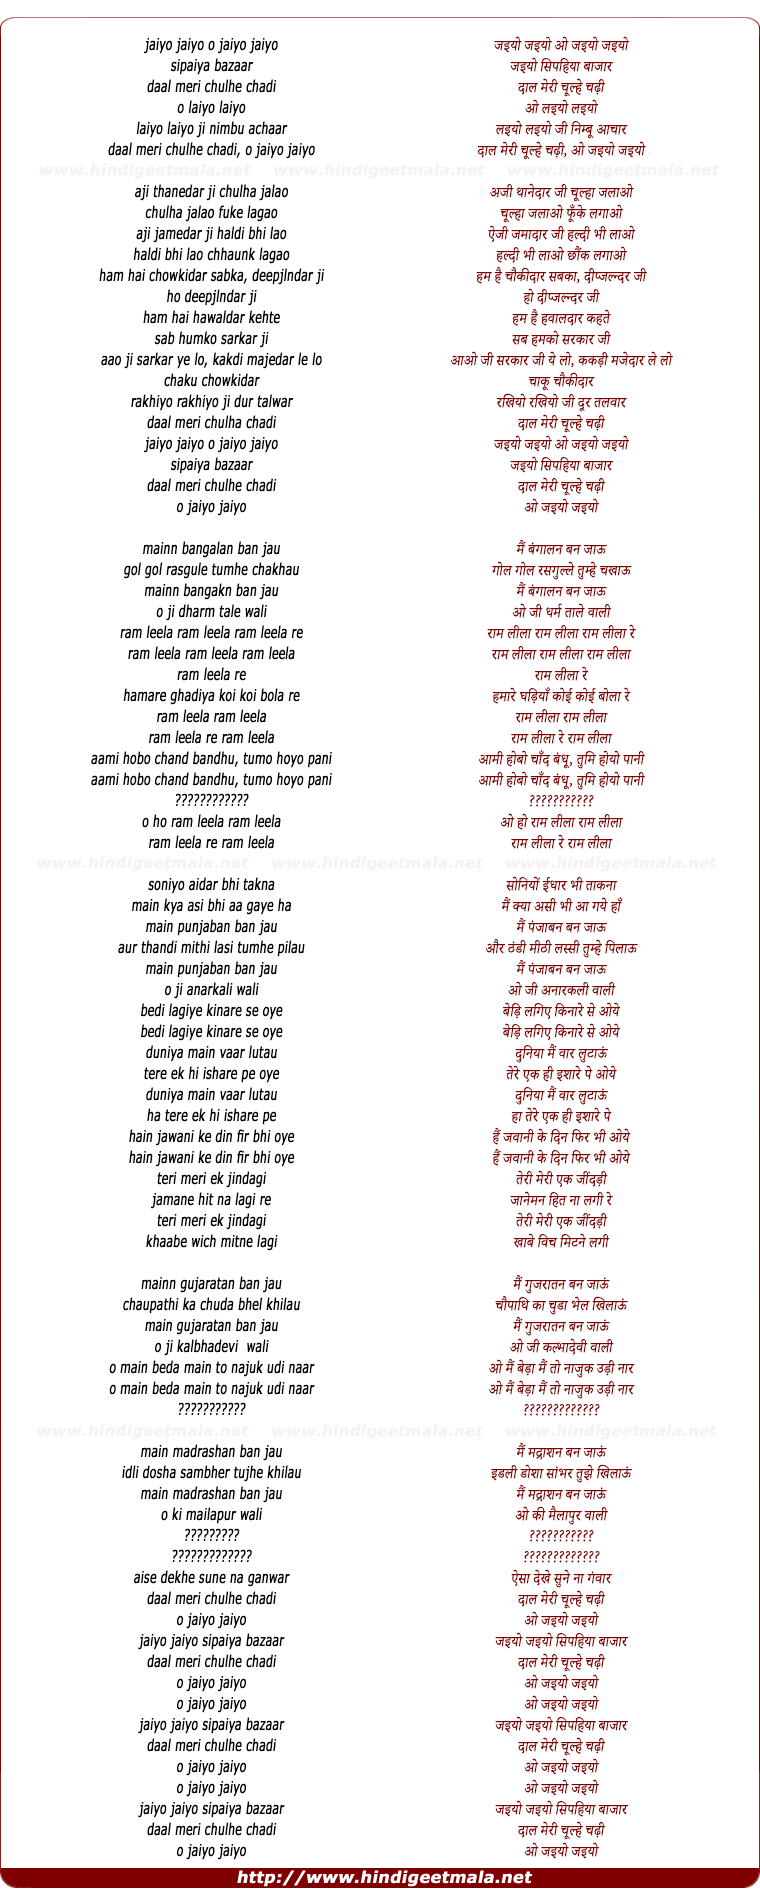 lyrics of song Jaiyo Jaiyo Sipaiya Bazar